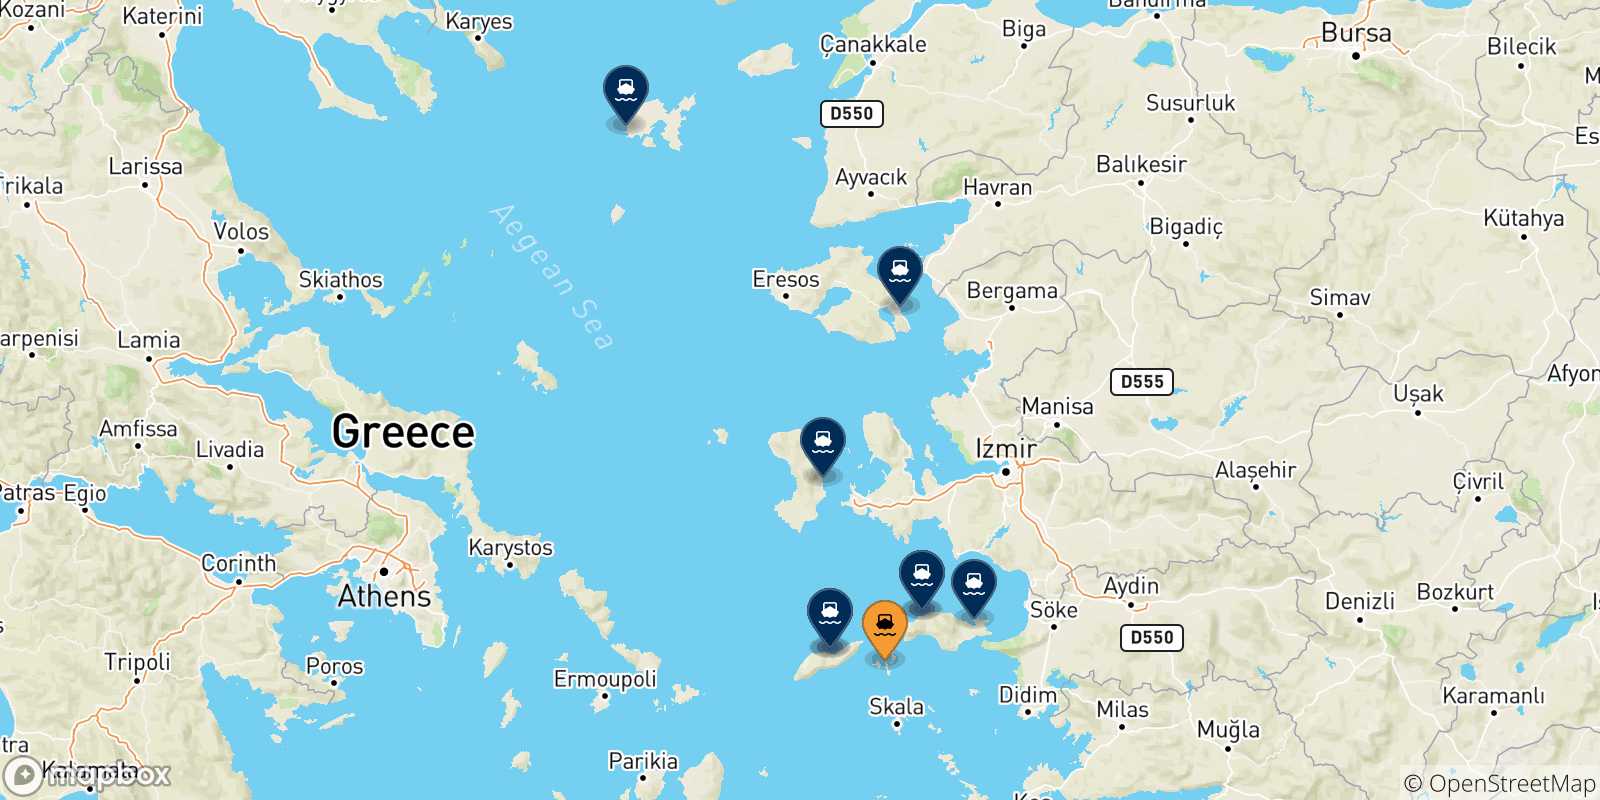 Mappa delle possibili rotte tra Fourni e le Isole Egeo Nord Orientale